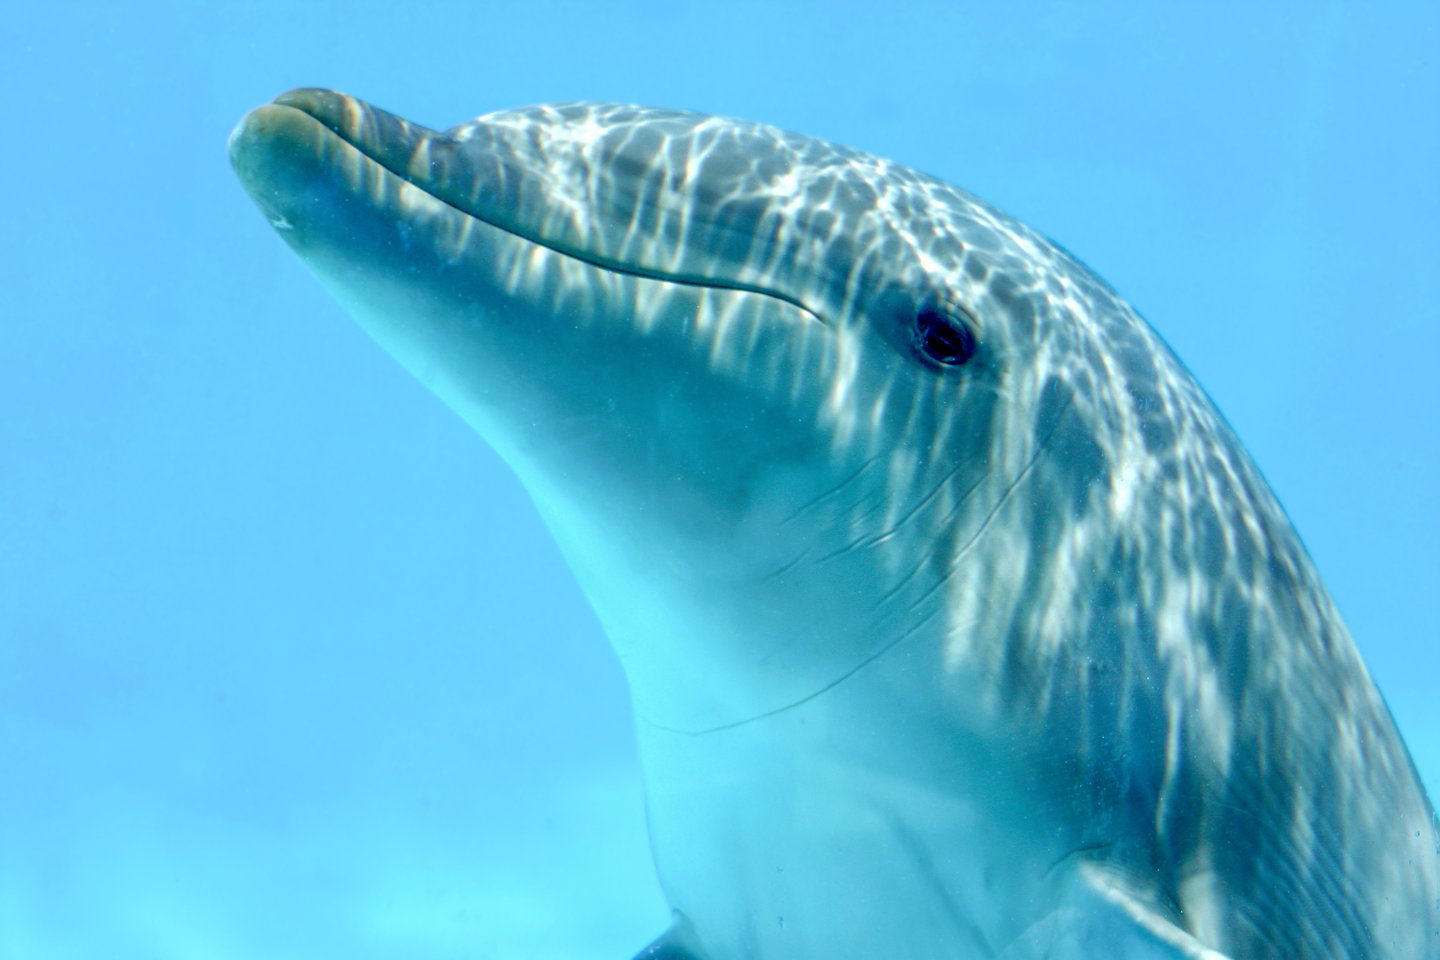  Indijos ir Ramiojo vandenynų delfinai afalinos iš Ryklių įlankos vakarų Australijoje maisto gauna gana neprastu būdu.<br> 123rf nuotr.